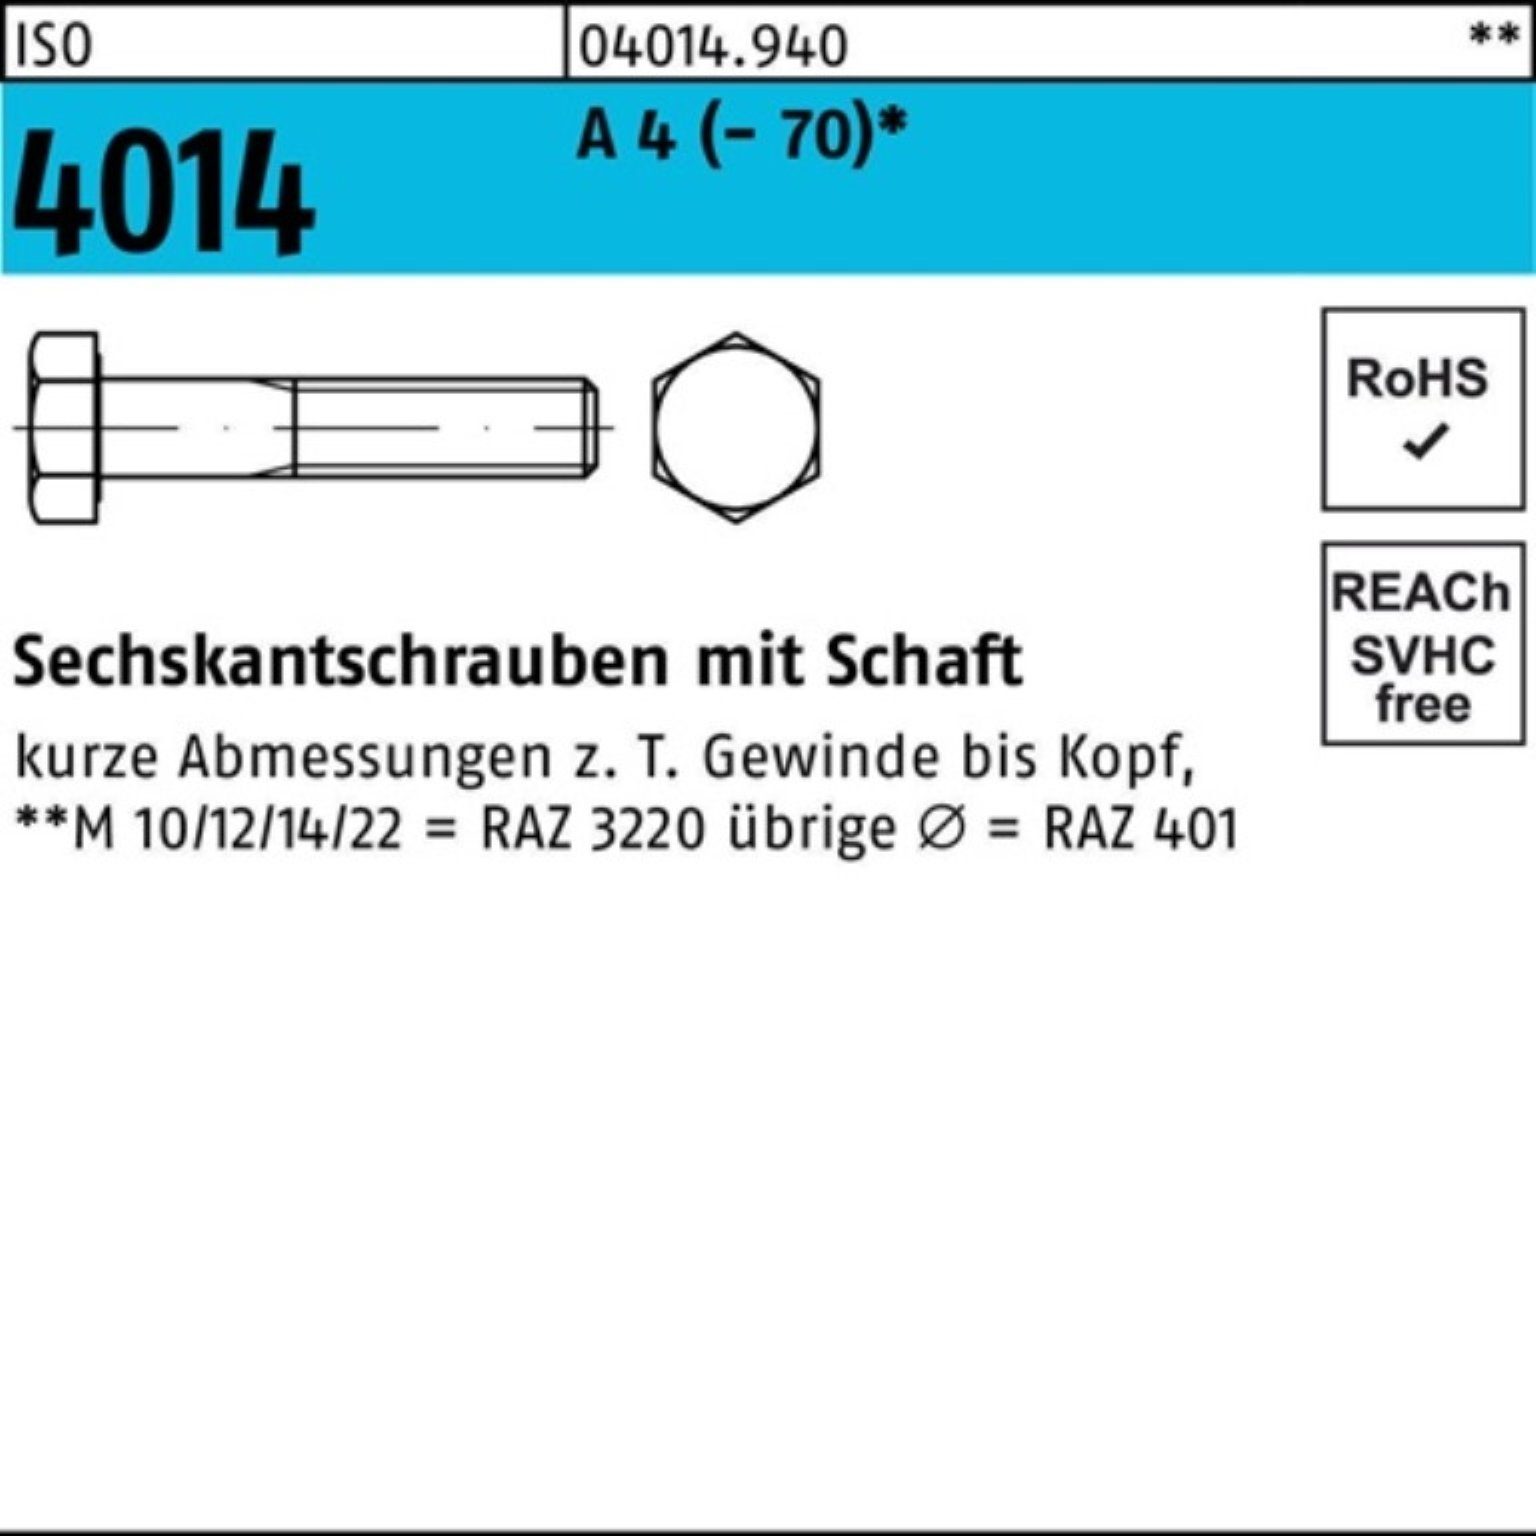 170 Sechskantschraube A 4 4014 M10x (70) 1 St ISO Sechskantschraube 100er Schaft Bufab Pack